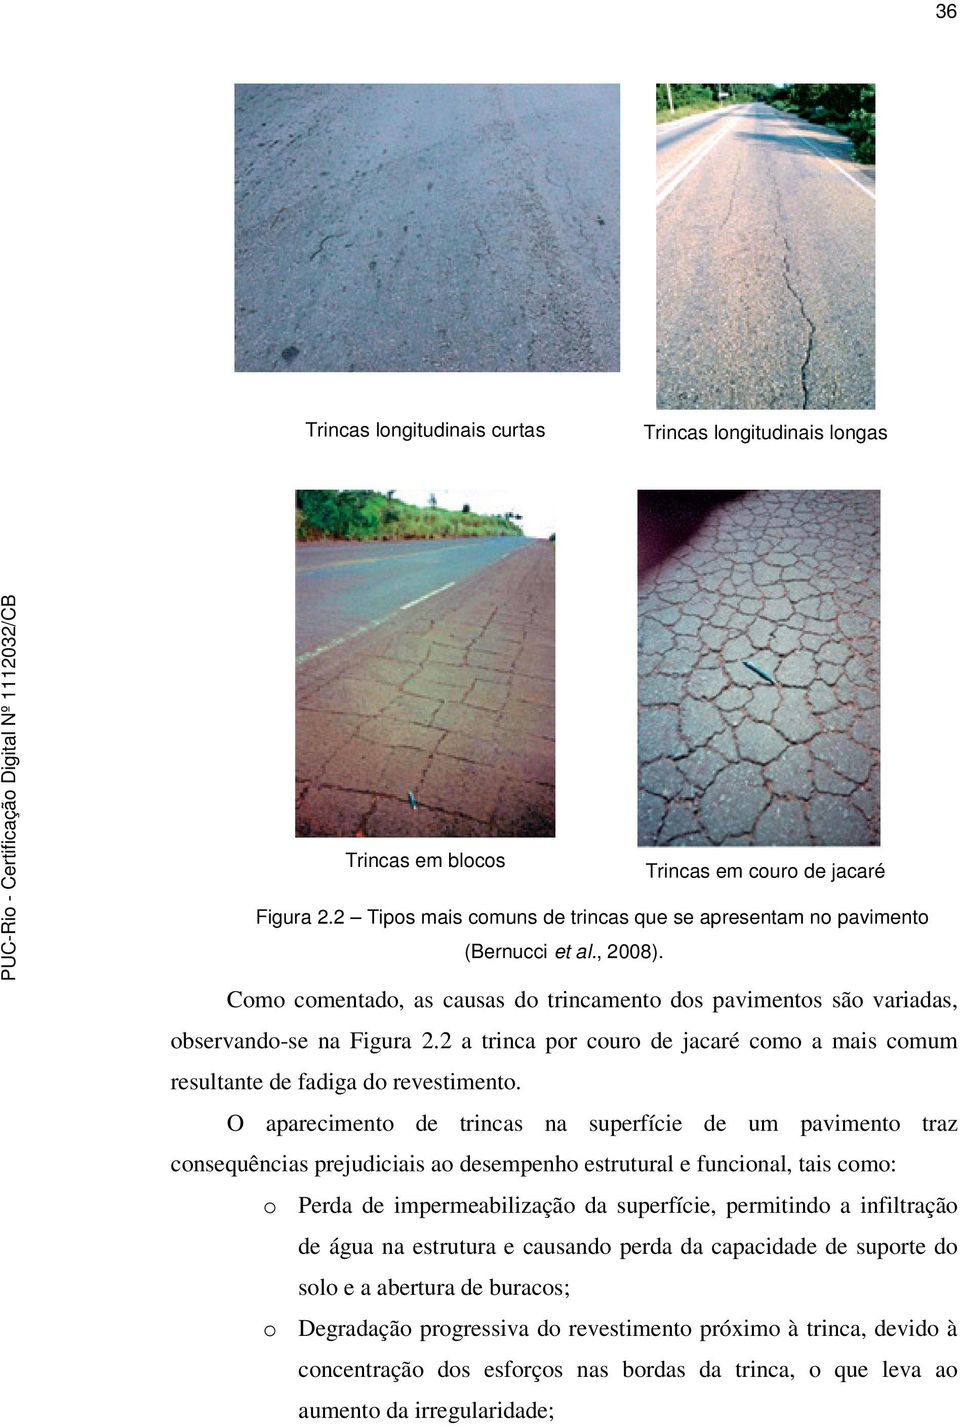 O aparecimento de trincas na superfície de um pavimento traz consequências prejudiciais ao desempenho estrutural e funcional, tais como: o Perda de impermeabilização da superfície, permitindo a